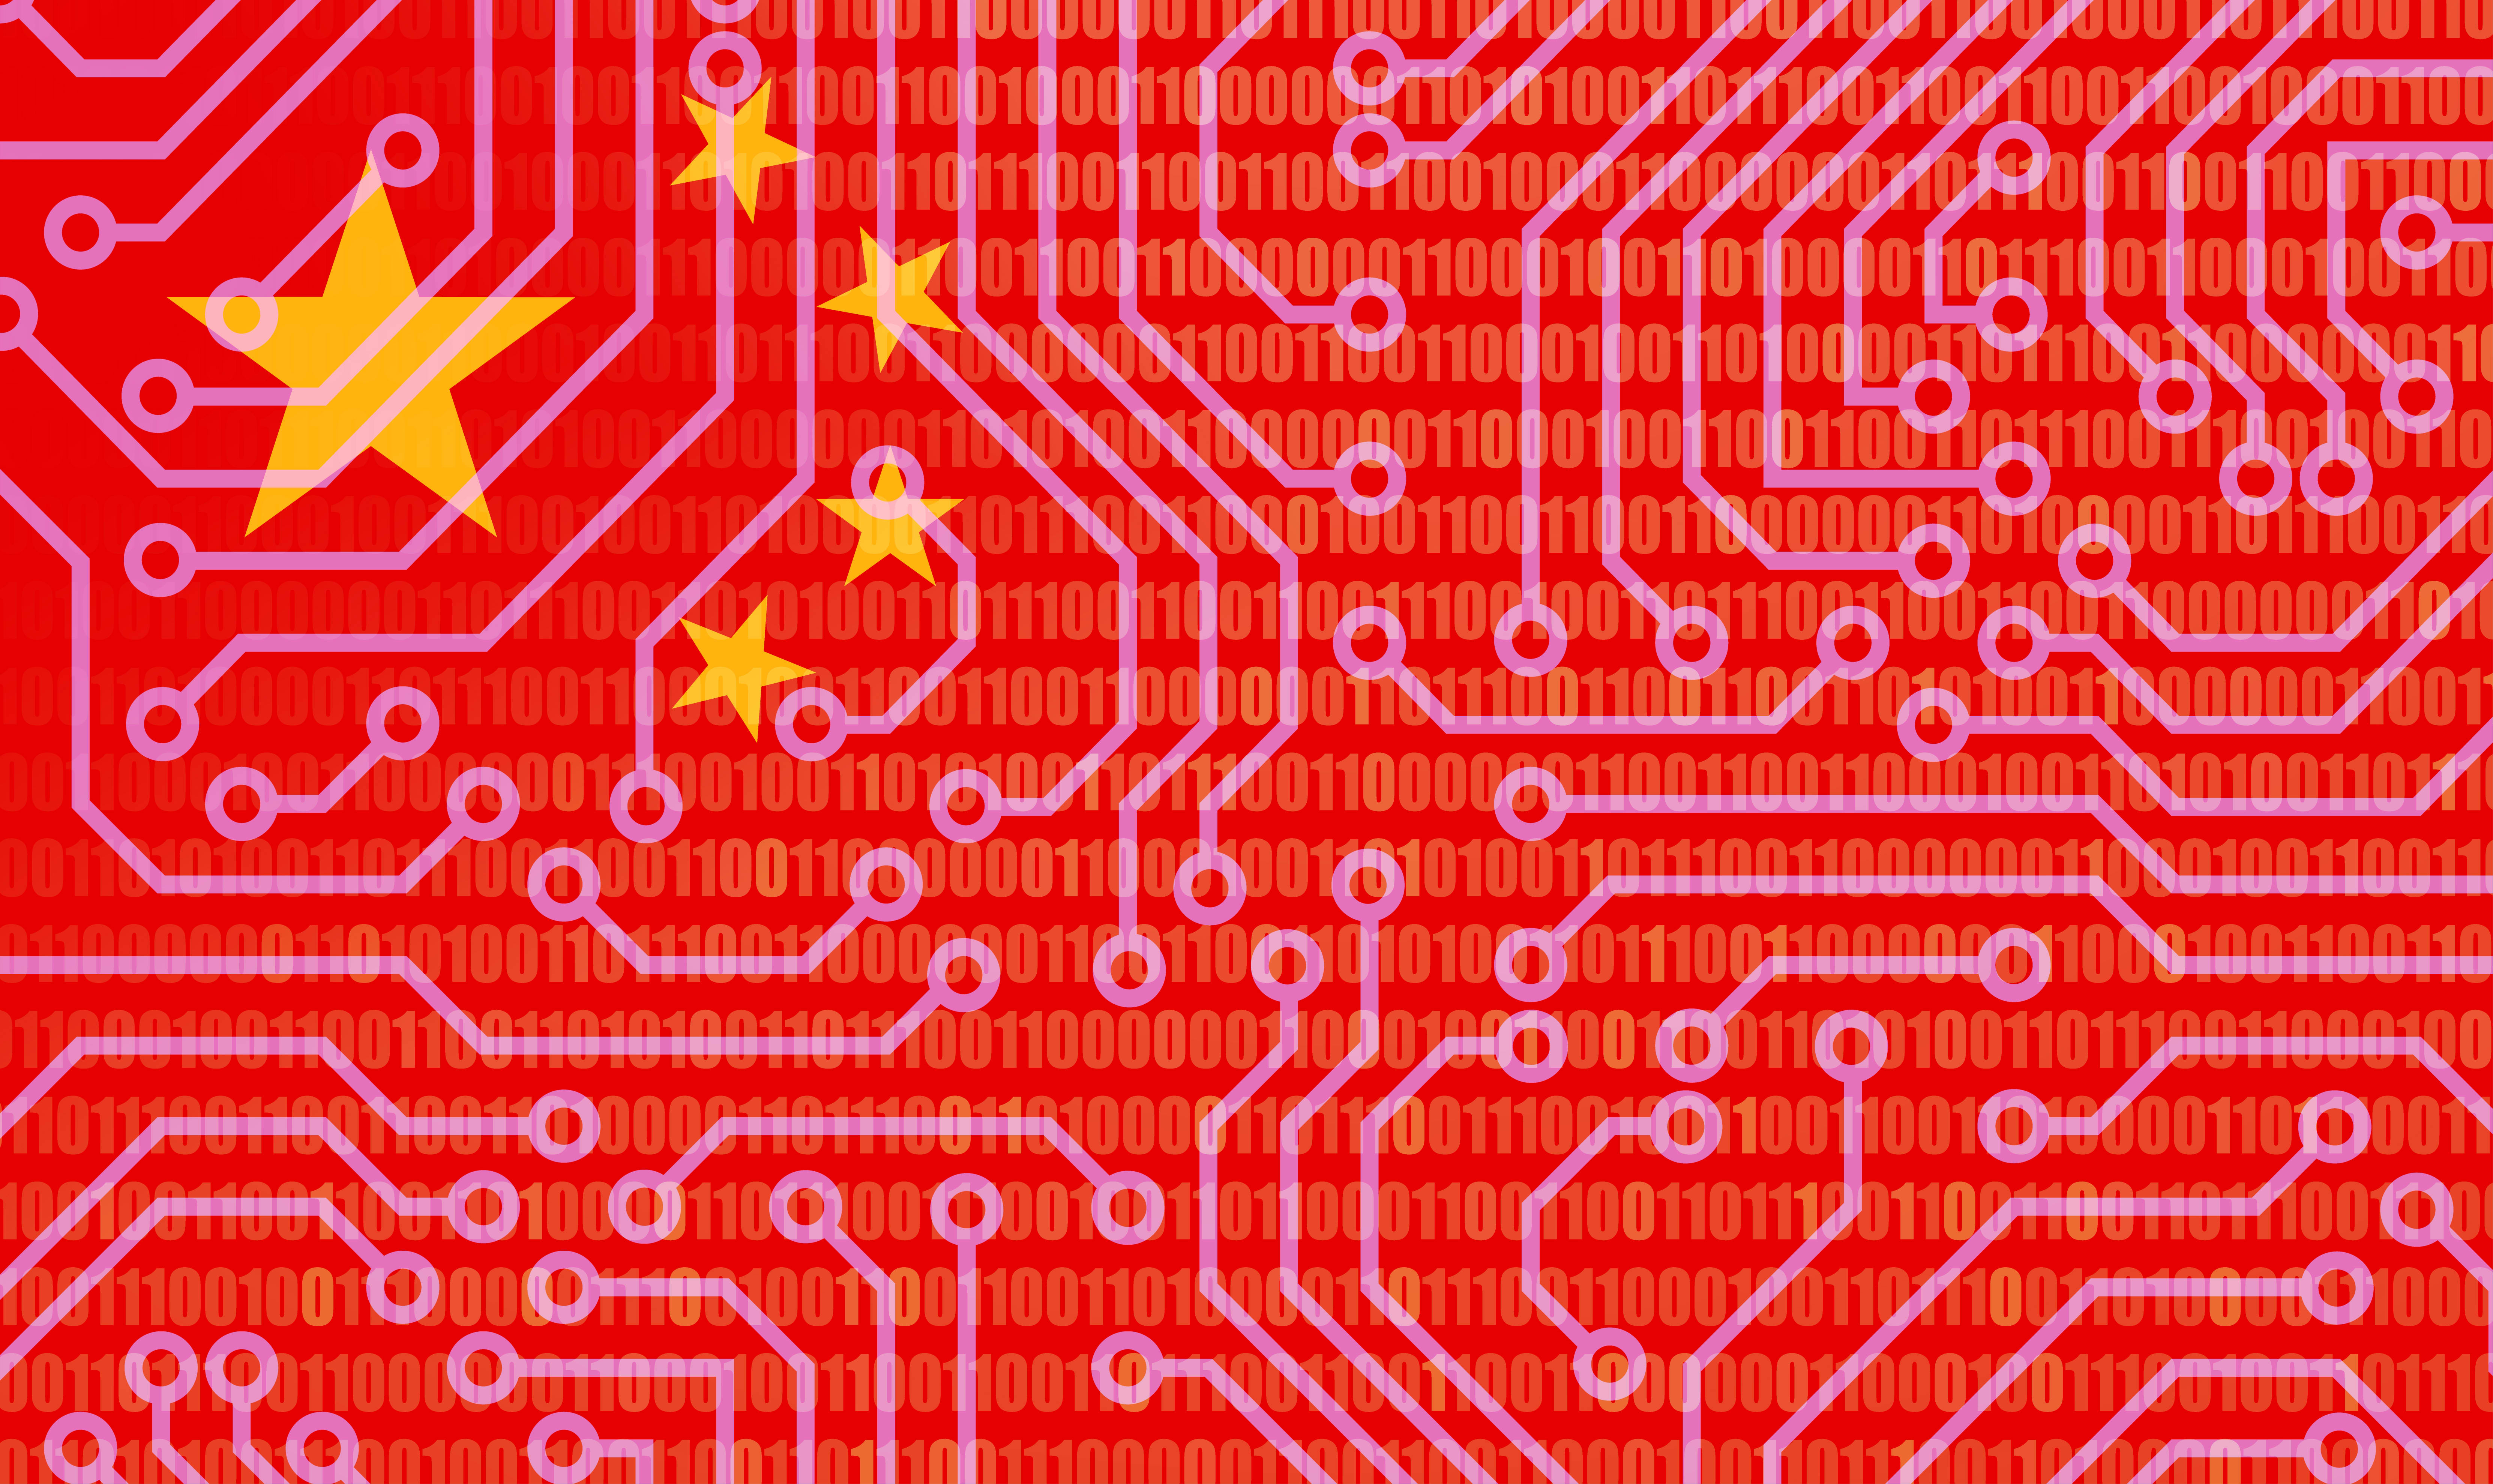 Kina vil øge computerkraften med 50 procent på grund af AI-kapløb med USA